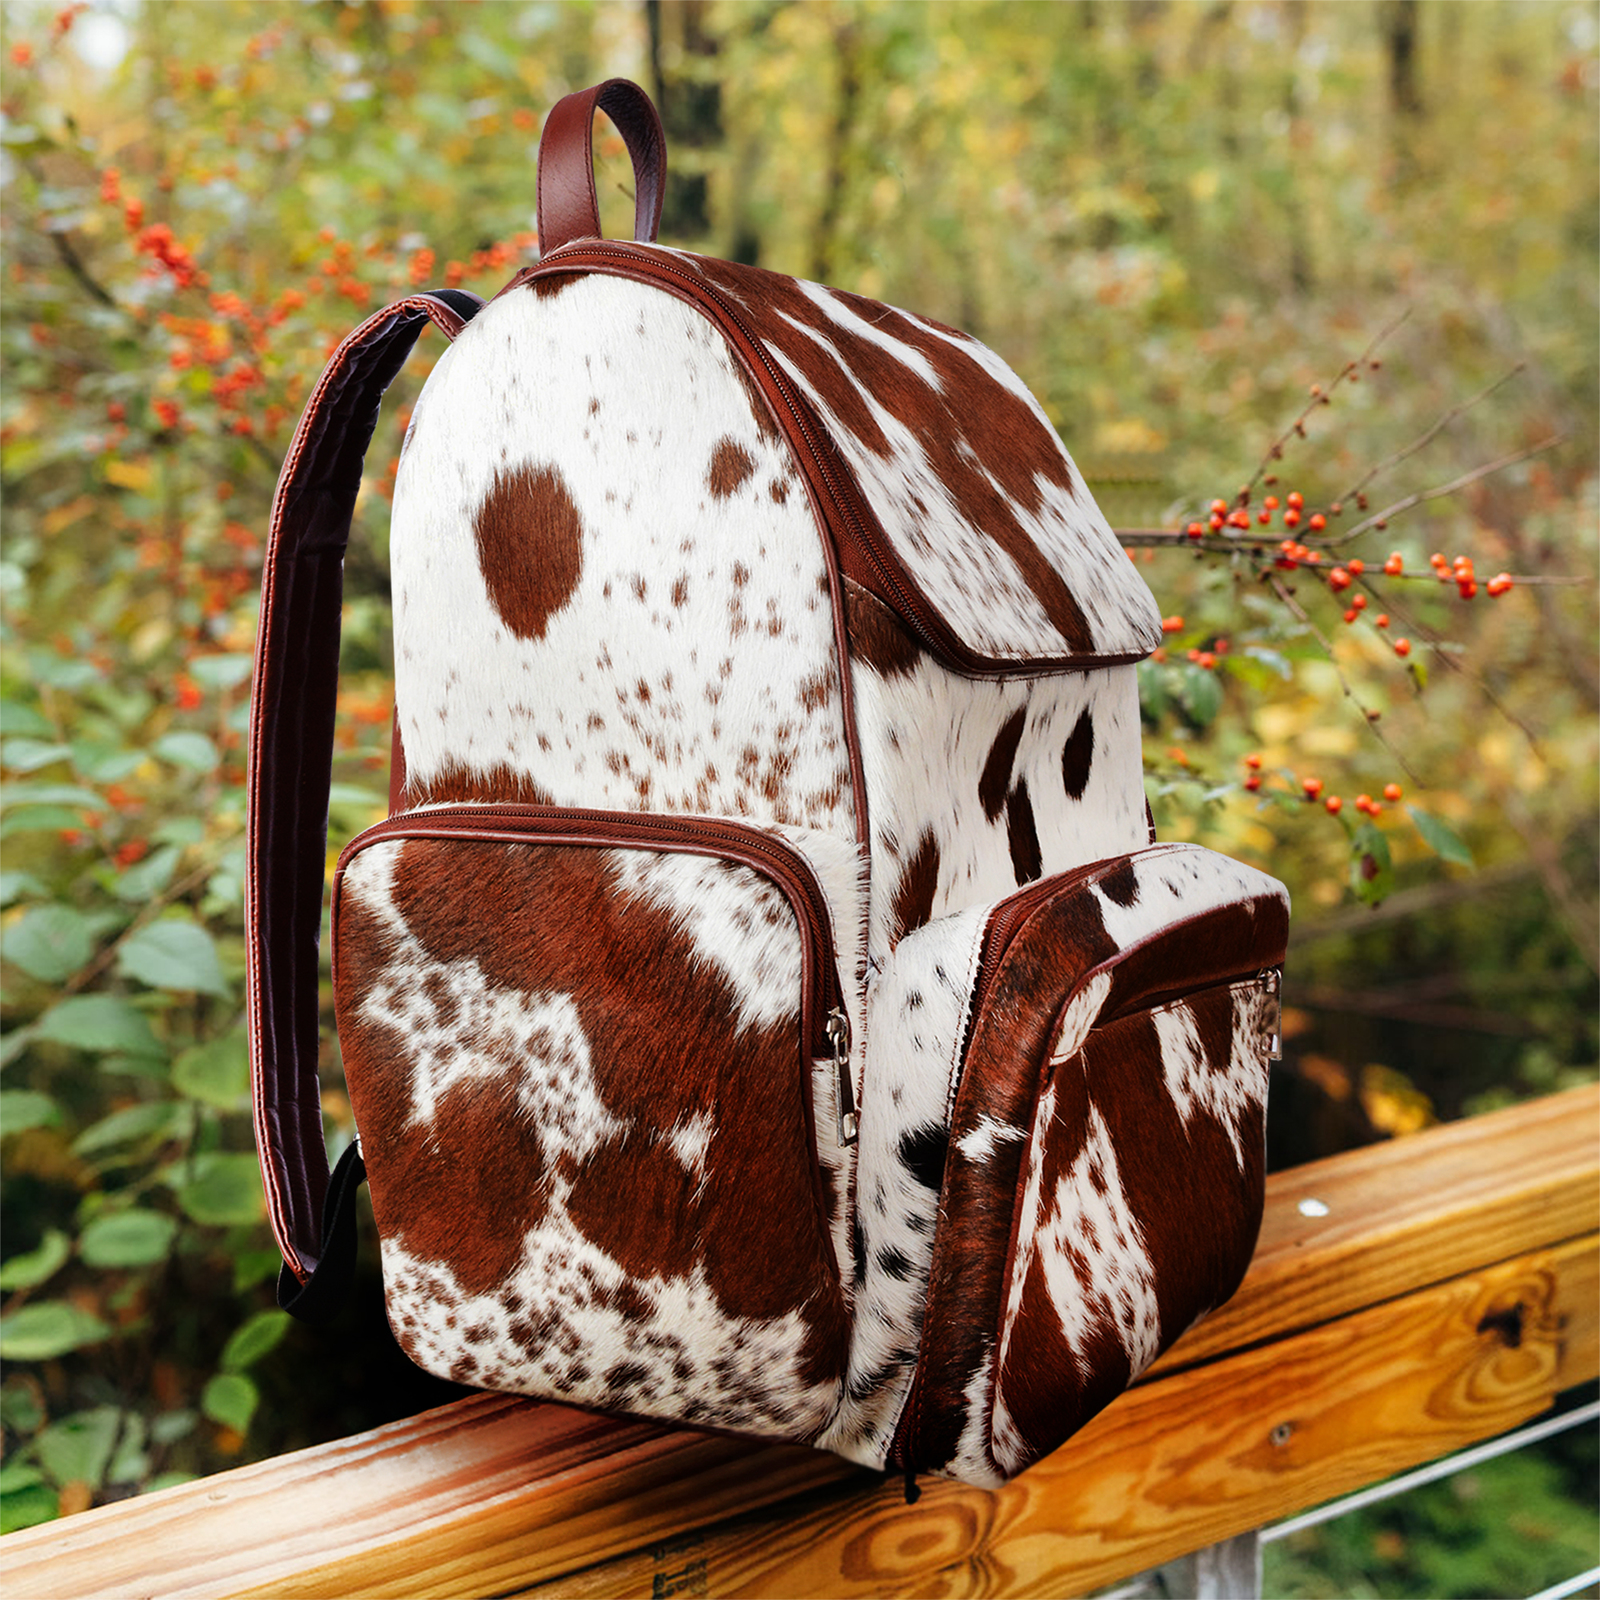 Cowhide Backpack Rucksack Knapsack Travel Brown And White Shoulder Bag